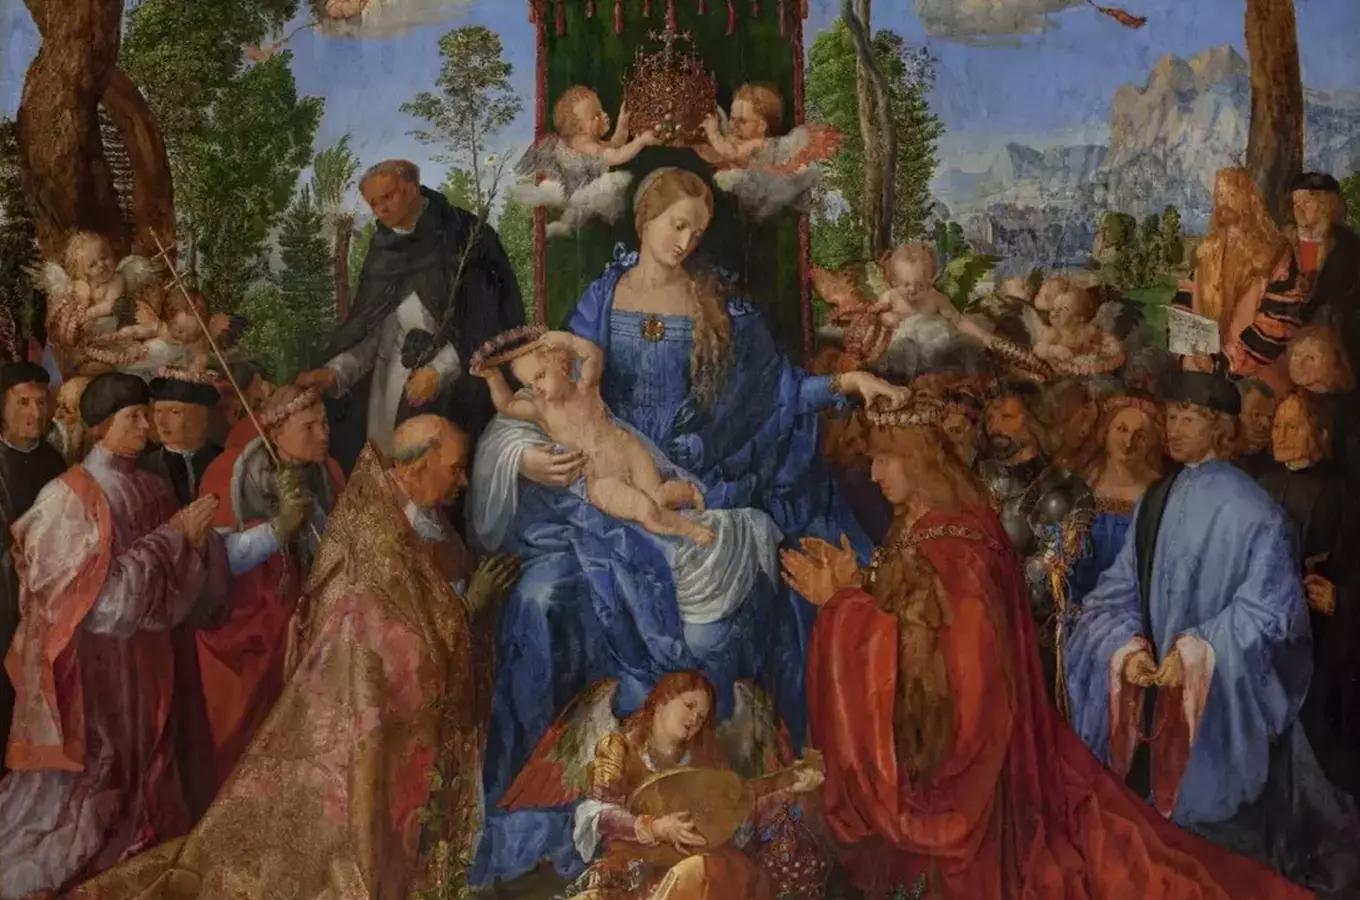 Cesty za uměním: Albrecht Dürer, obraz Růžencová slavnost a moucha na koleně Panny Marie